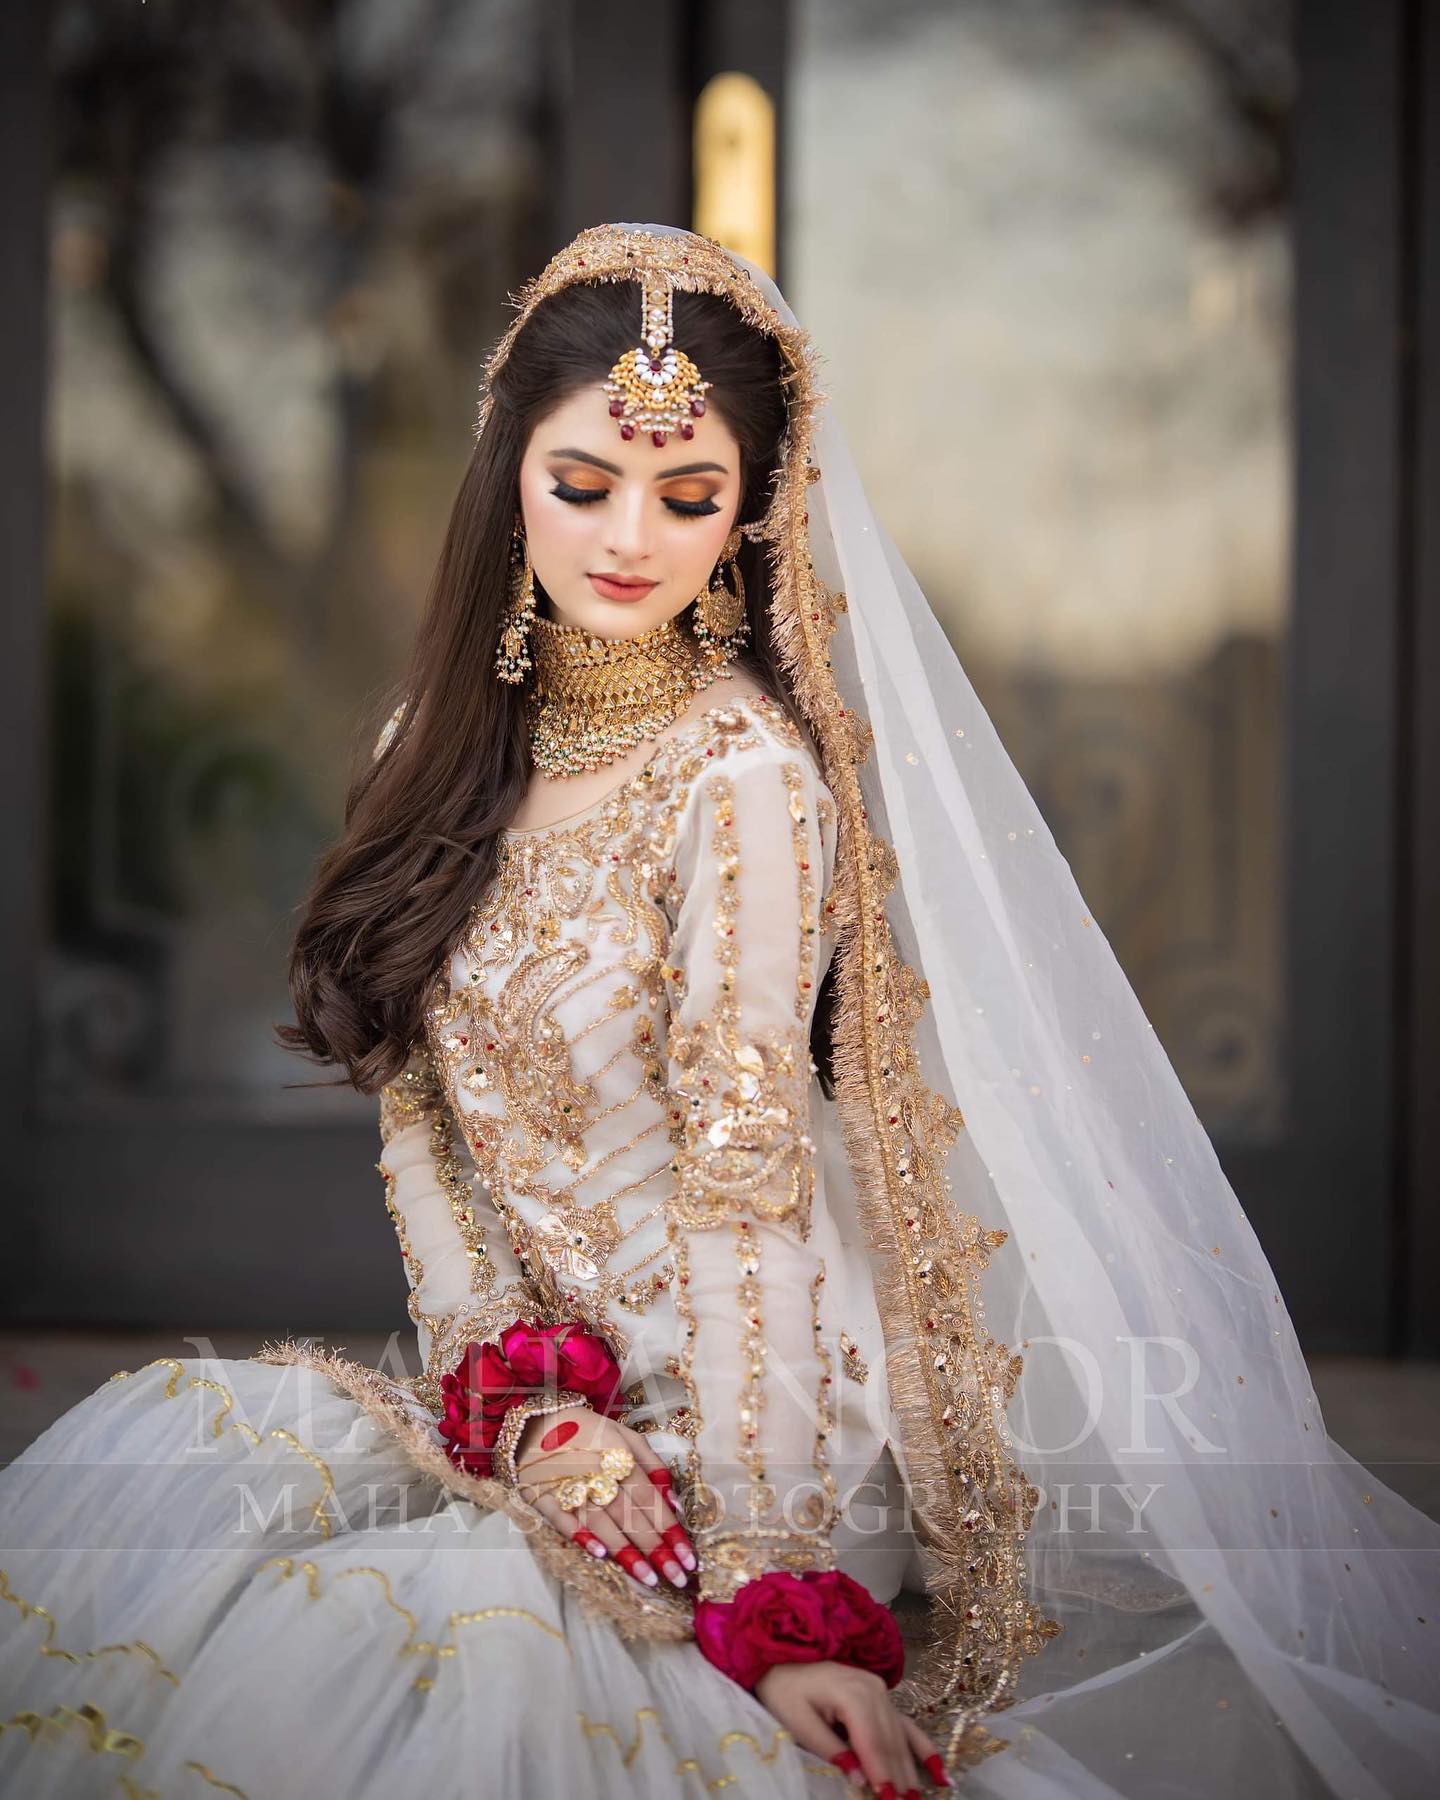 Bridal Lehenga Photoshoot Ideas | Bridal Photoshoot | Lehenga Photoshoot |  Trending Bridal Poses | Bride photoshoot, Bridal poses, Bride photography  poses